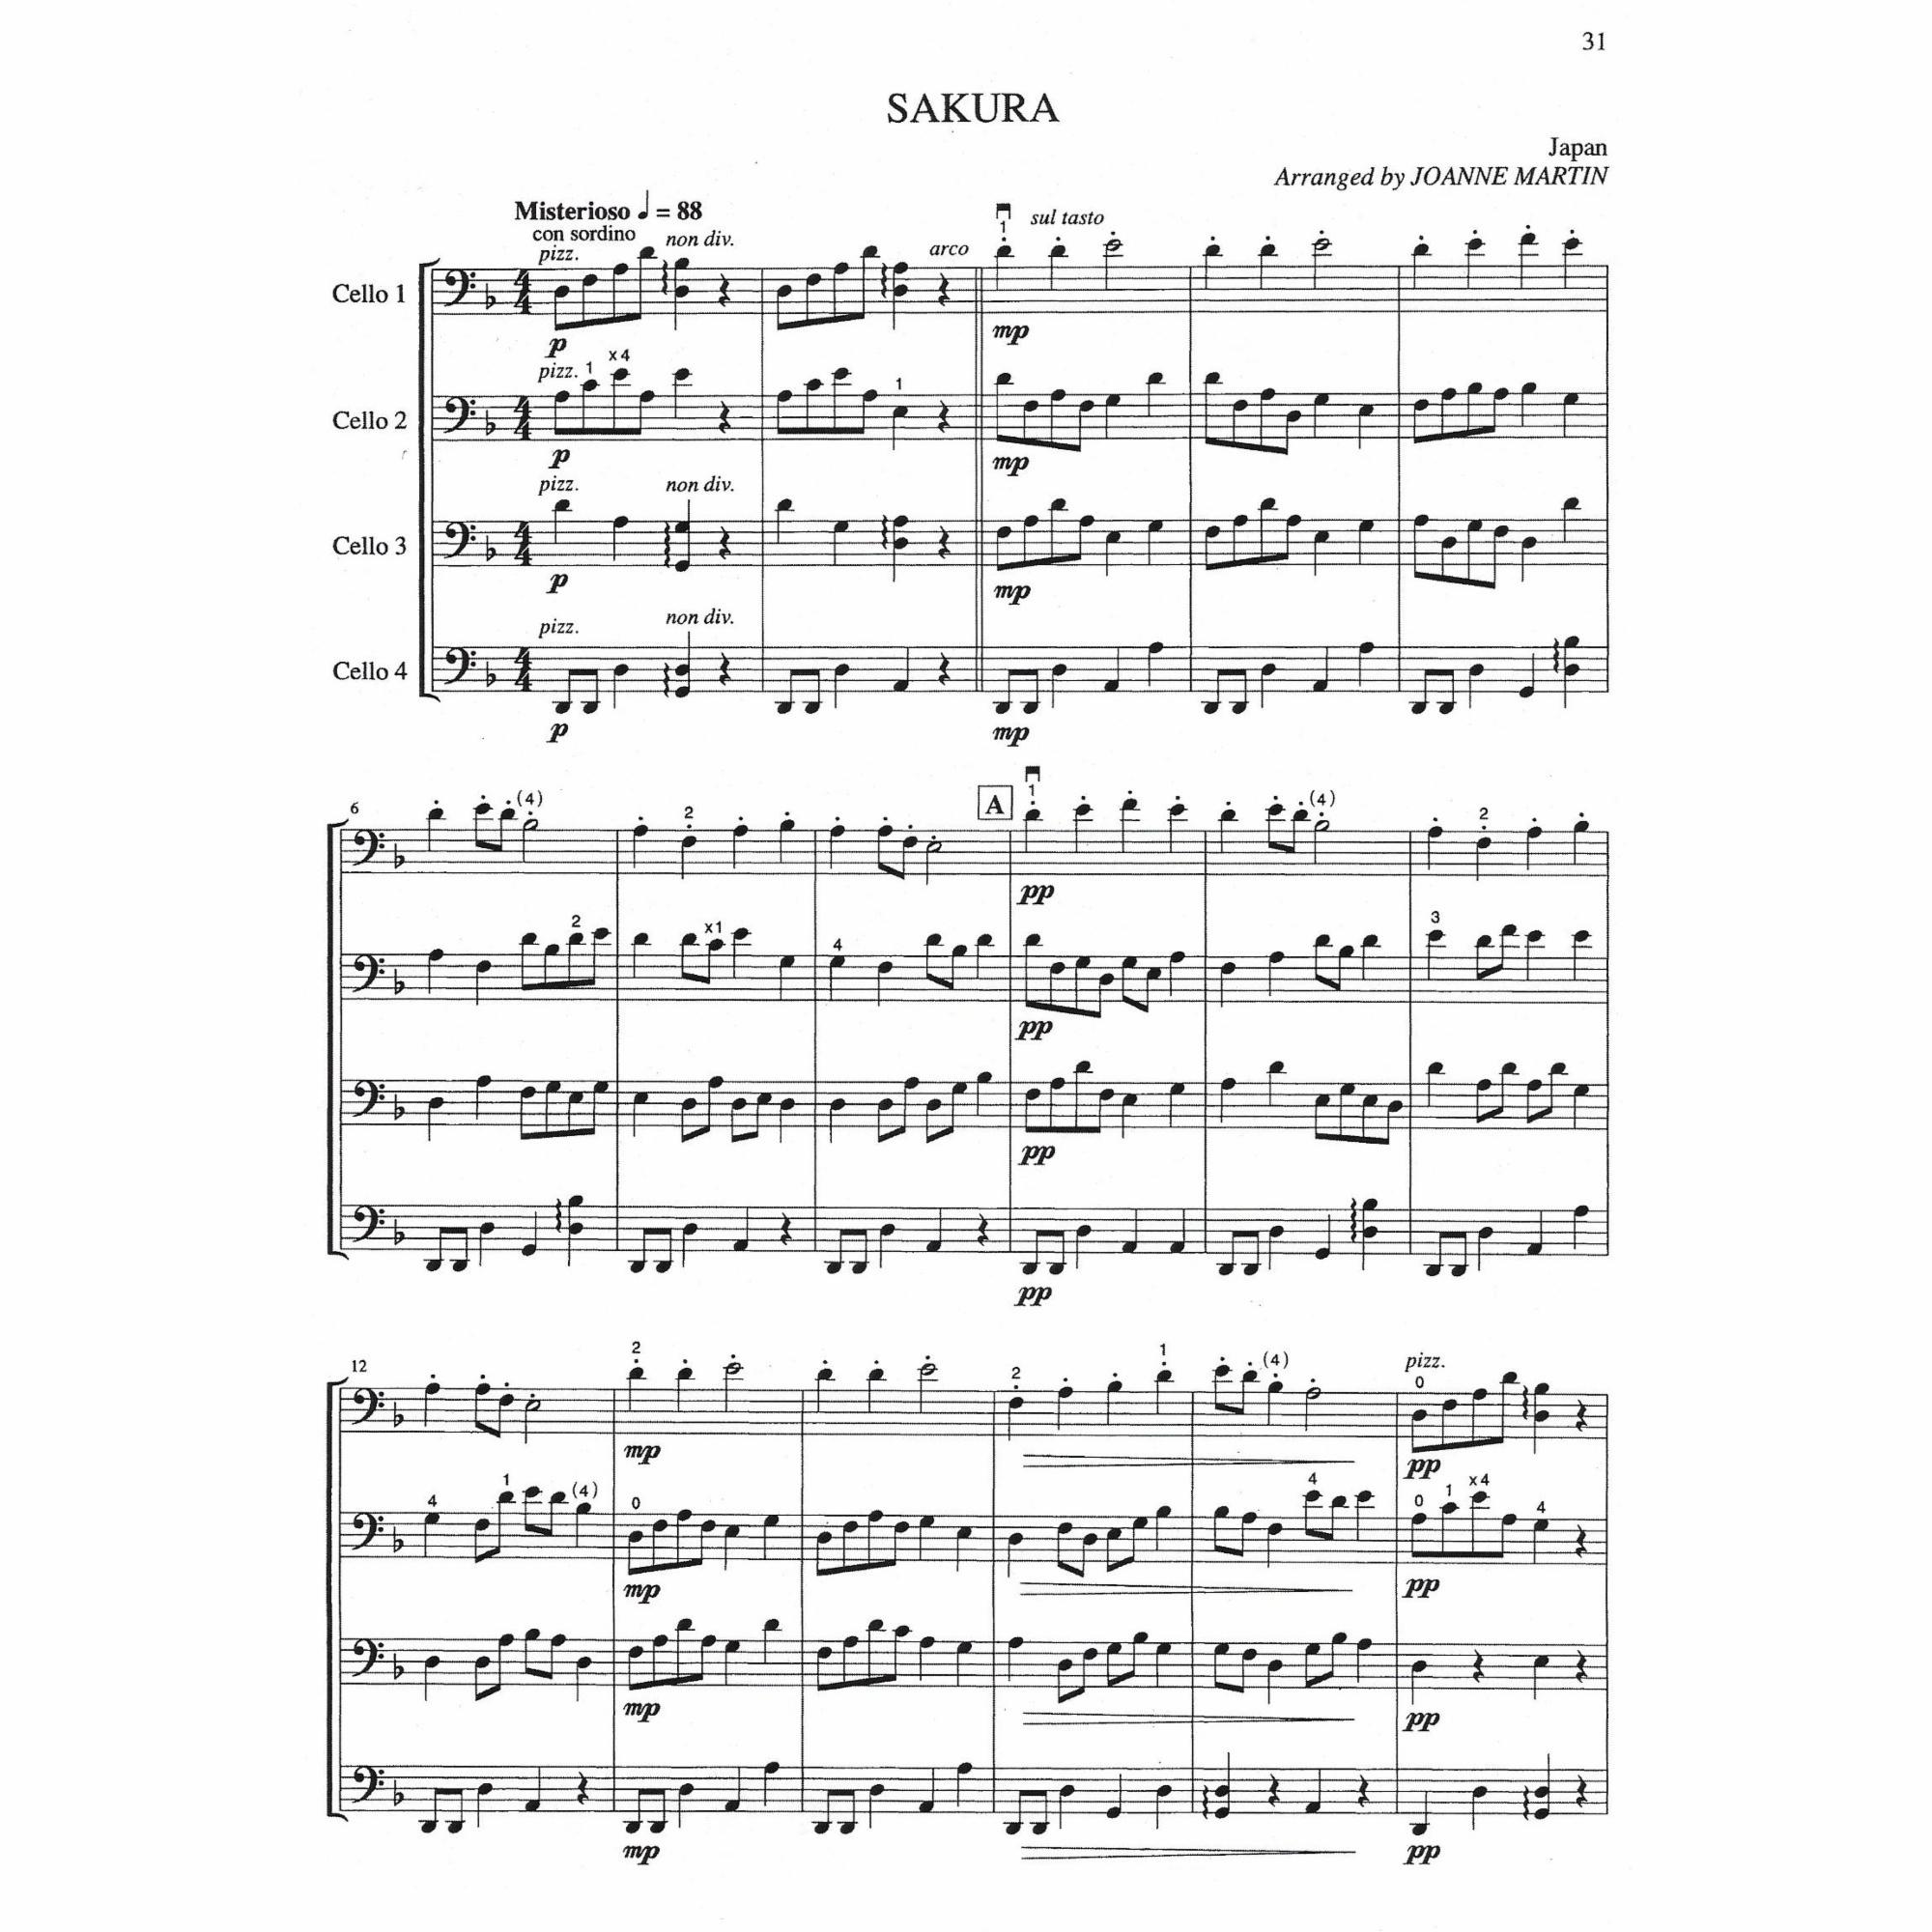 Sample: Cello Ensemble (Pg. 31)